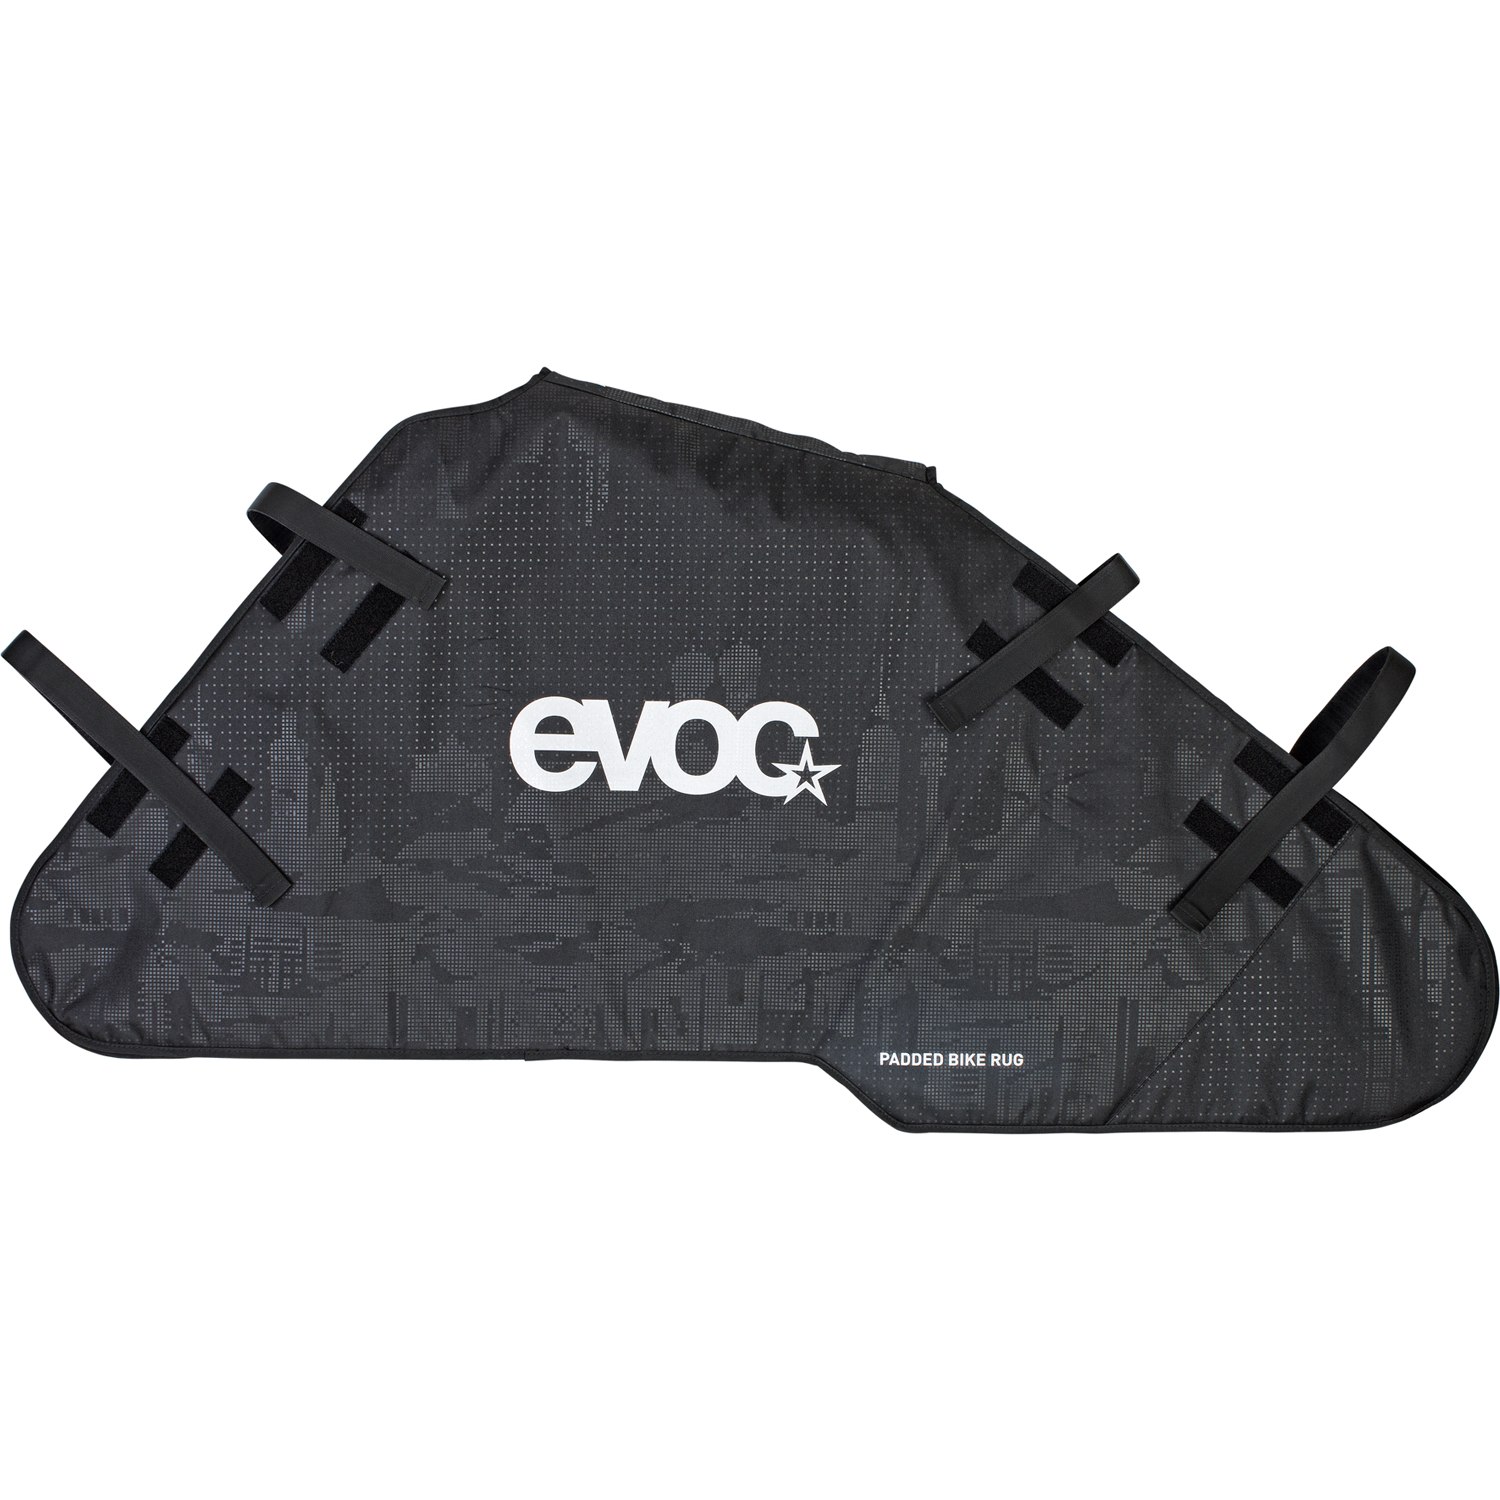 Picture of Evoc PADDED BIKE RUG - Bike Cover Bag - Black